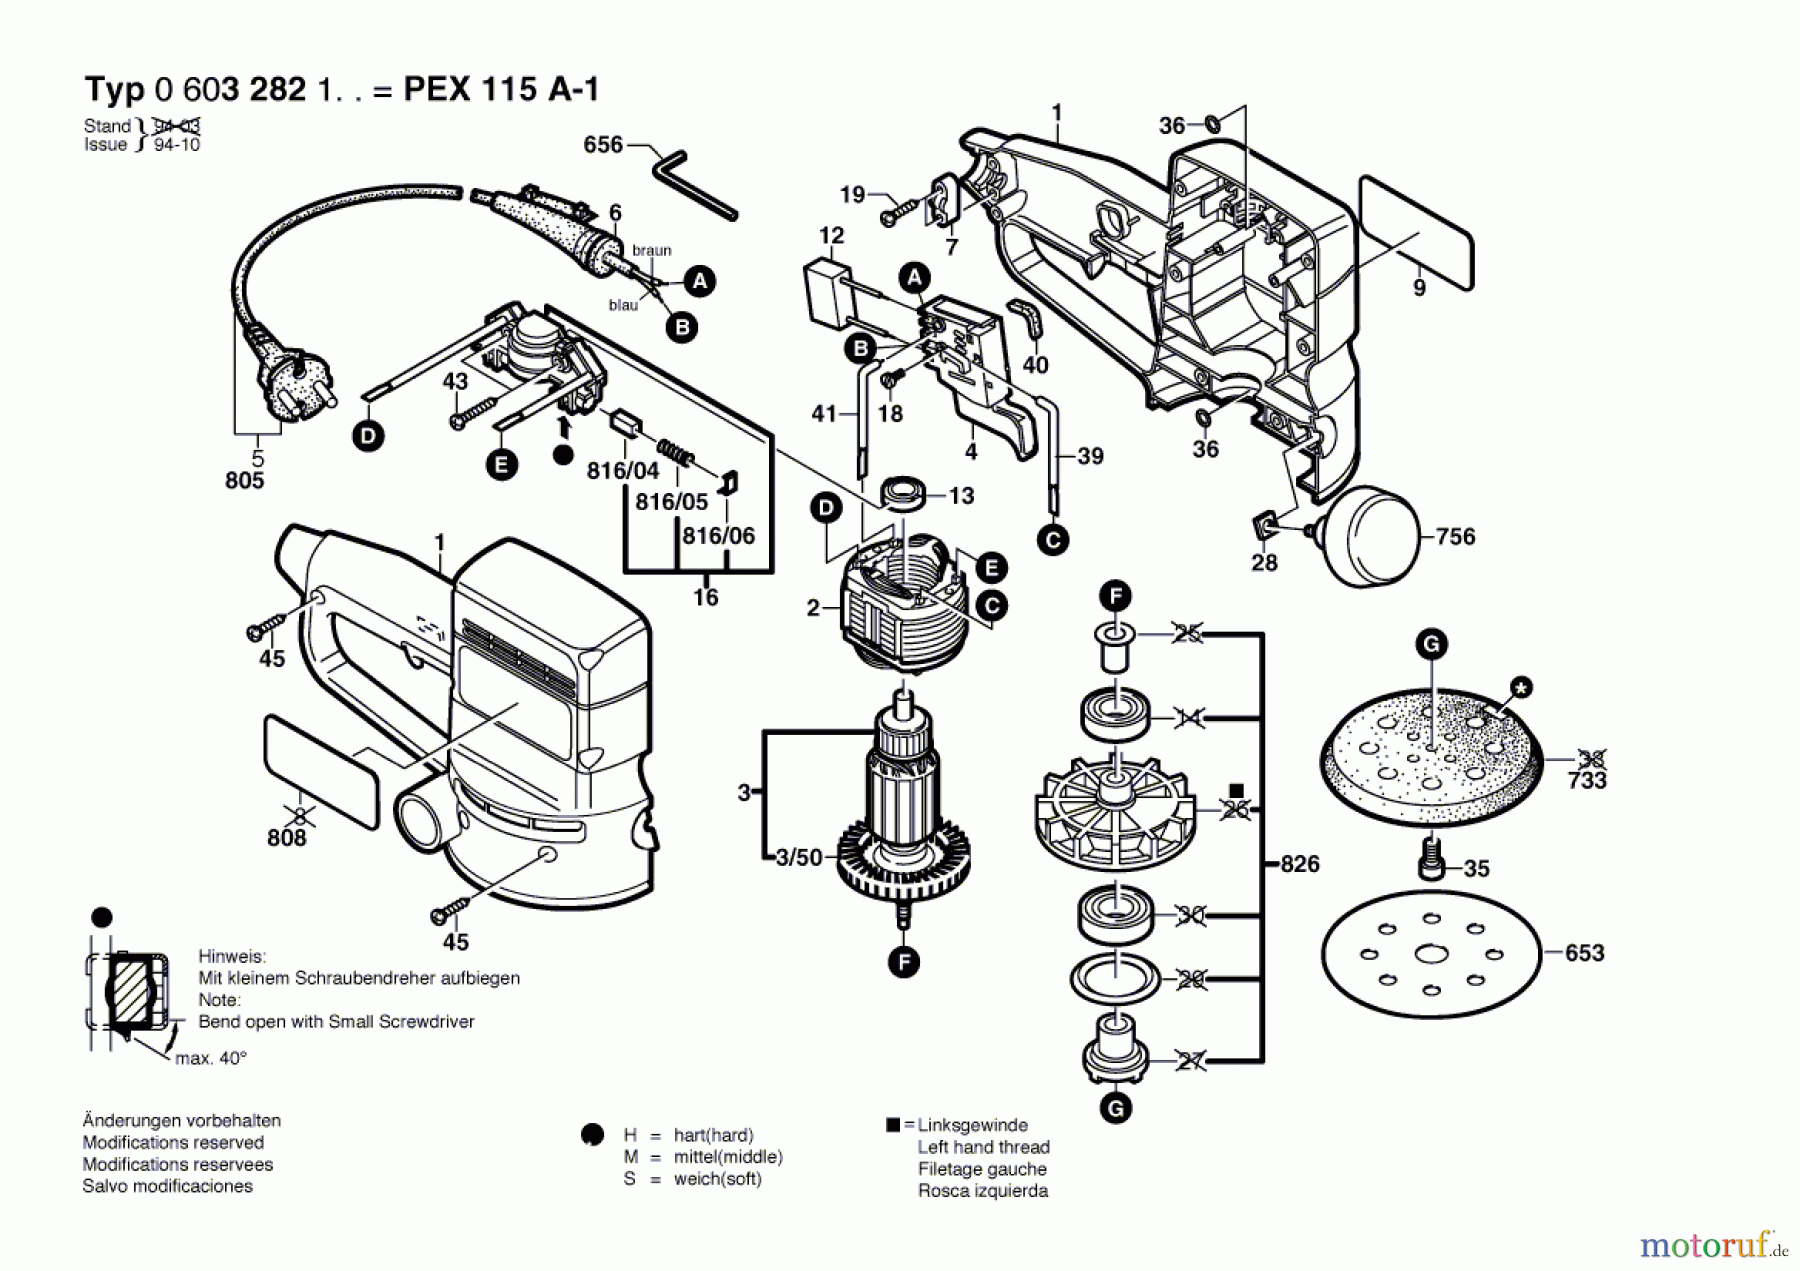  Bosch Werkzeug Exzenterschleifer PEX 115 A-1 Seite 1